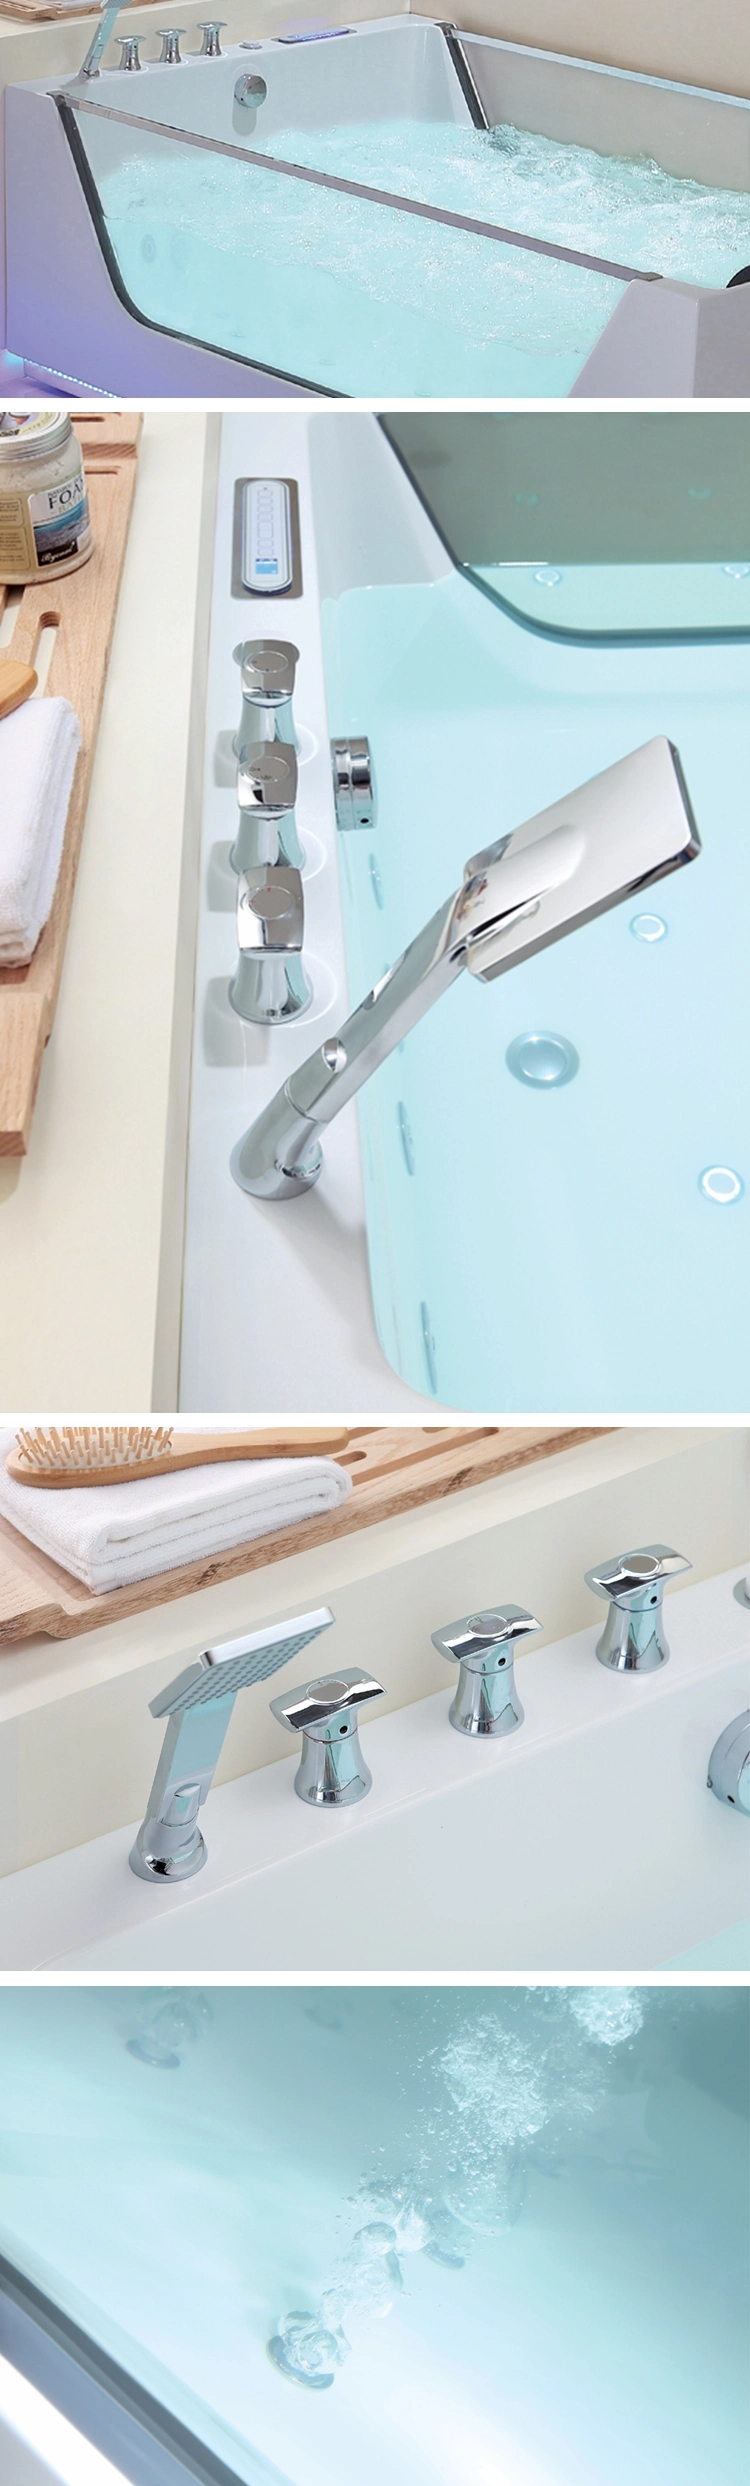 Freestanding Used Fiberglass Whirlpool Tub Bathtub